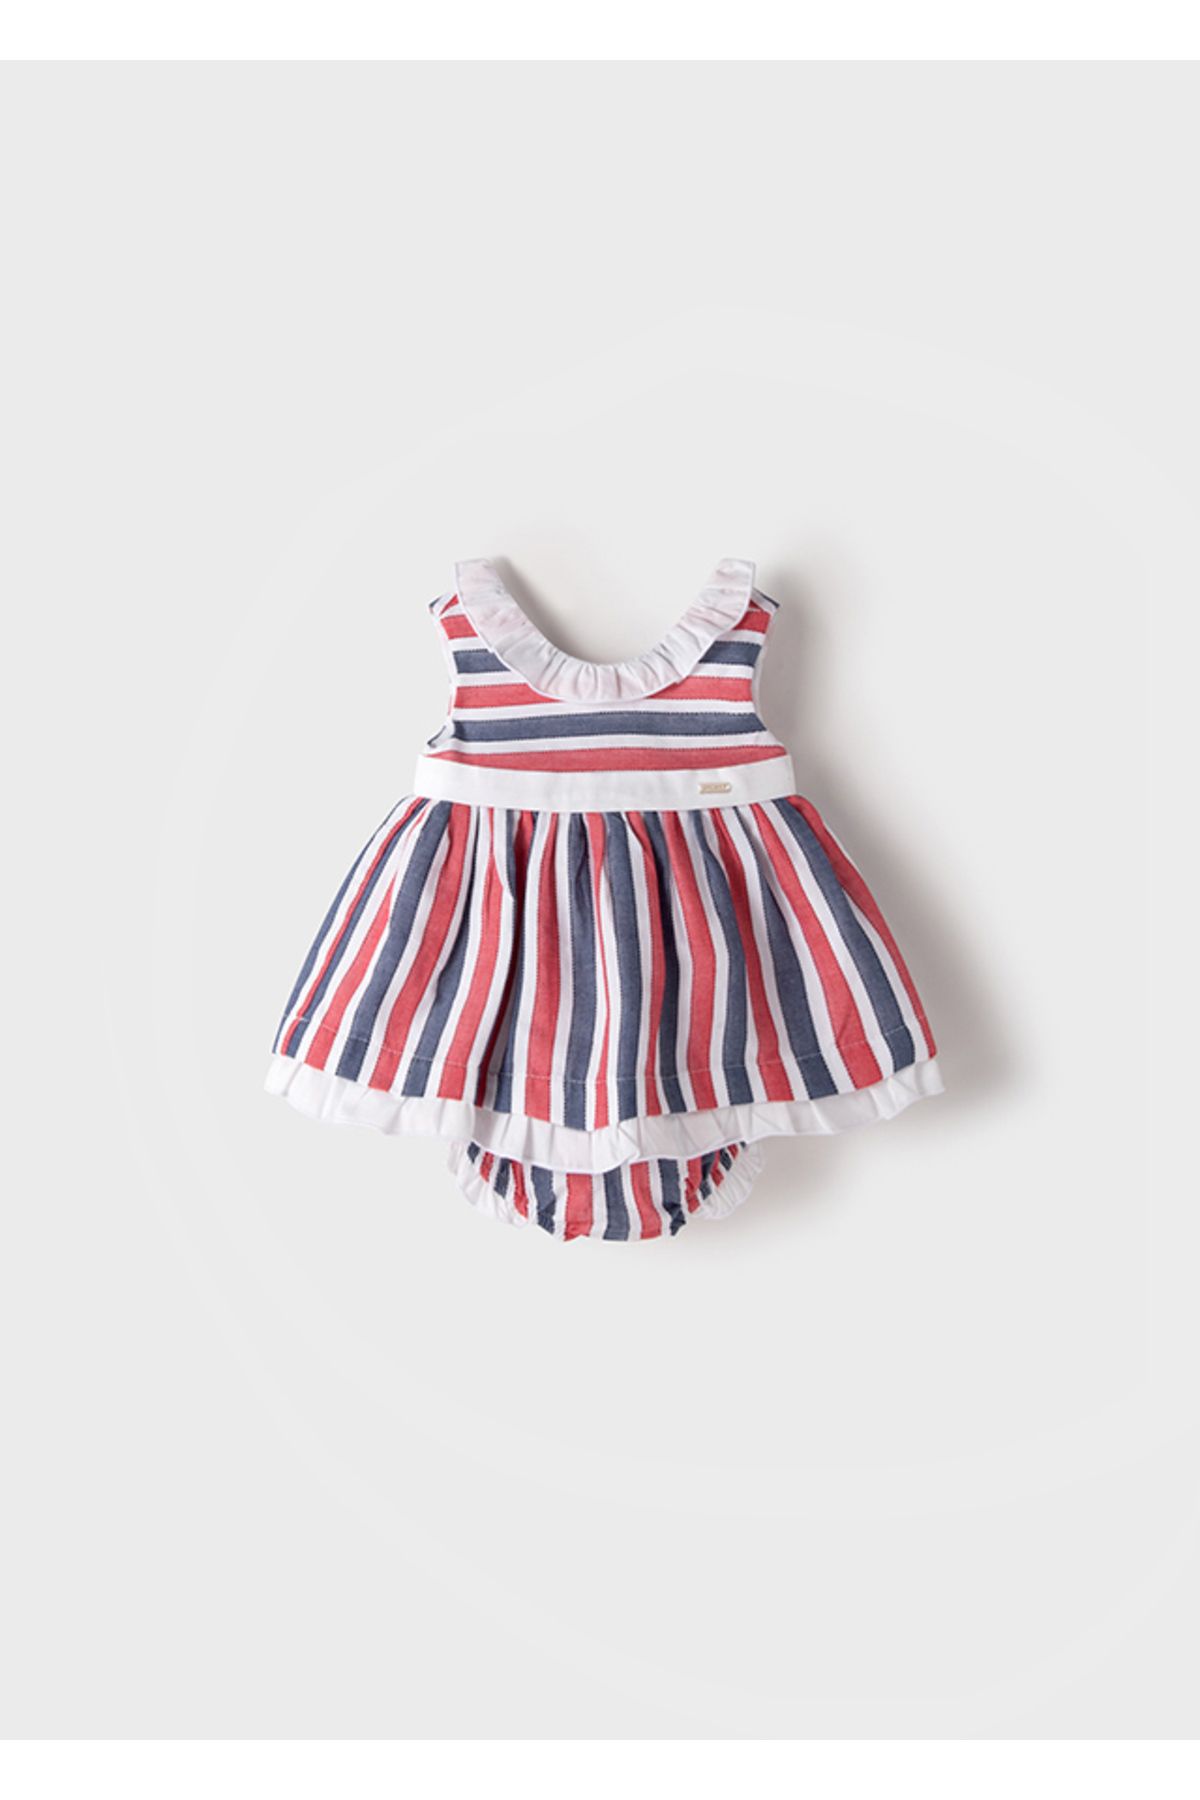 Mayoral Kız Bebek Yazlık Elbise Set 1847